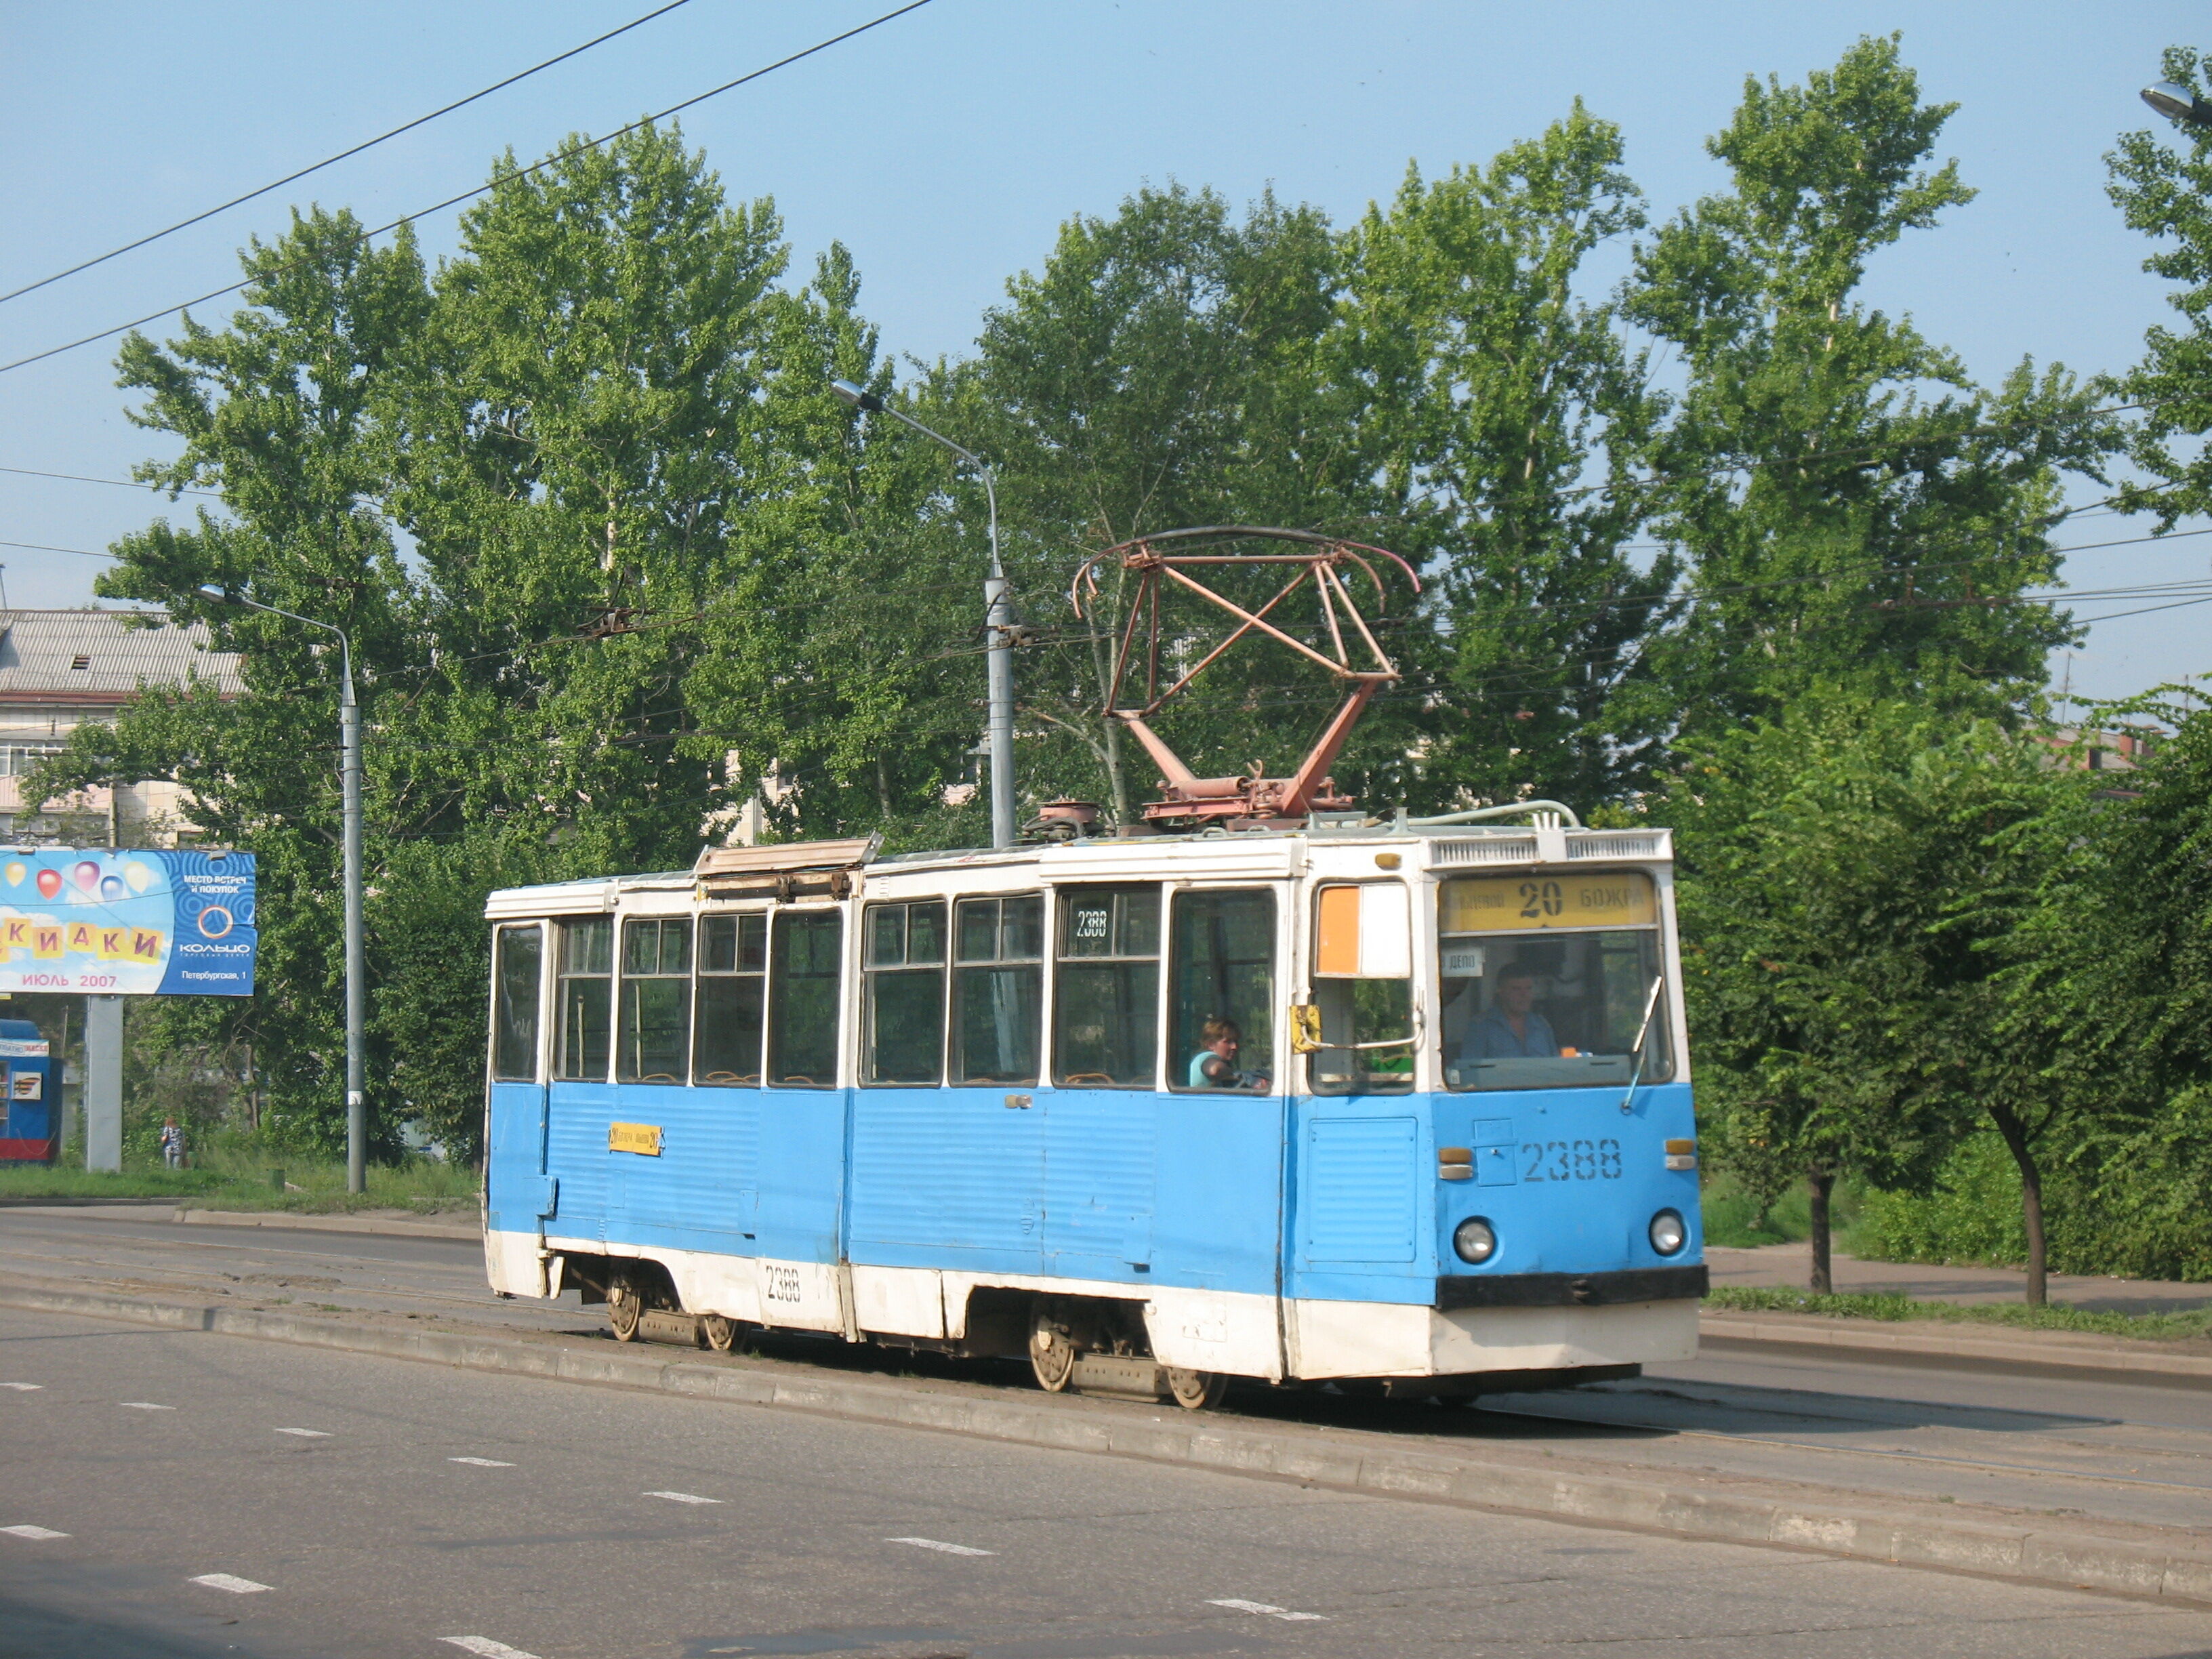 Трамвай 71-605 2388, маршрут 20